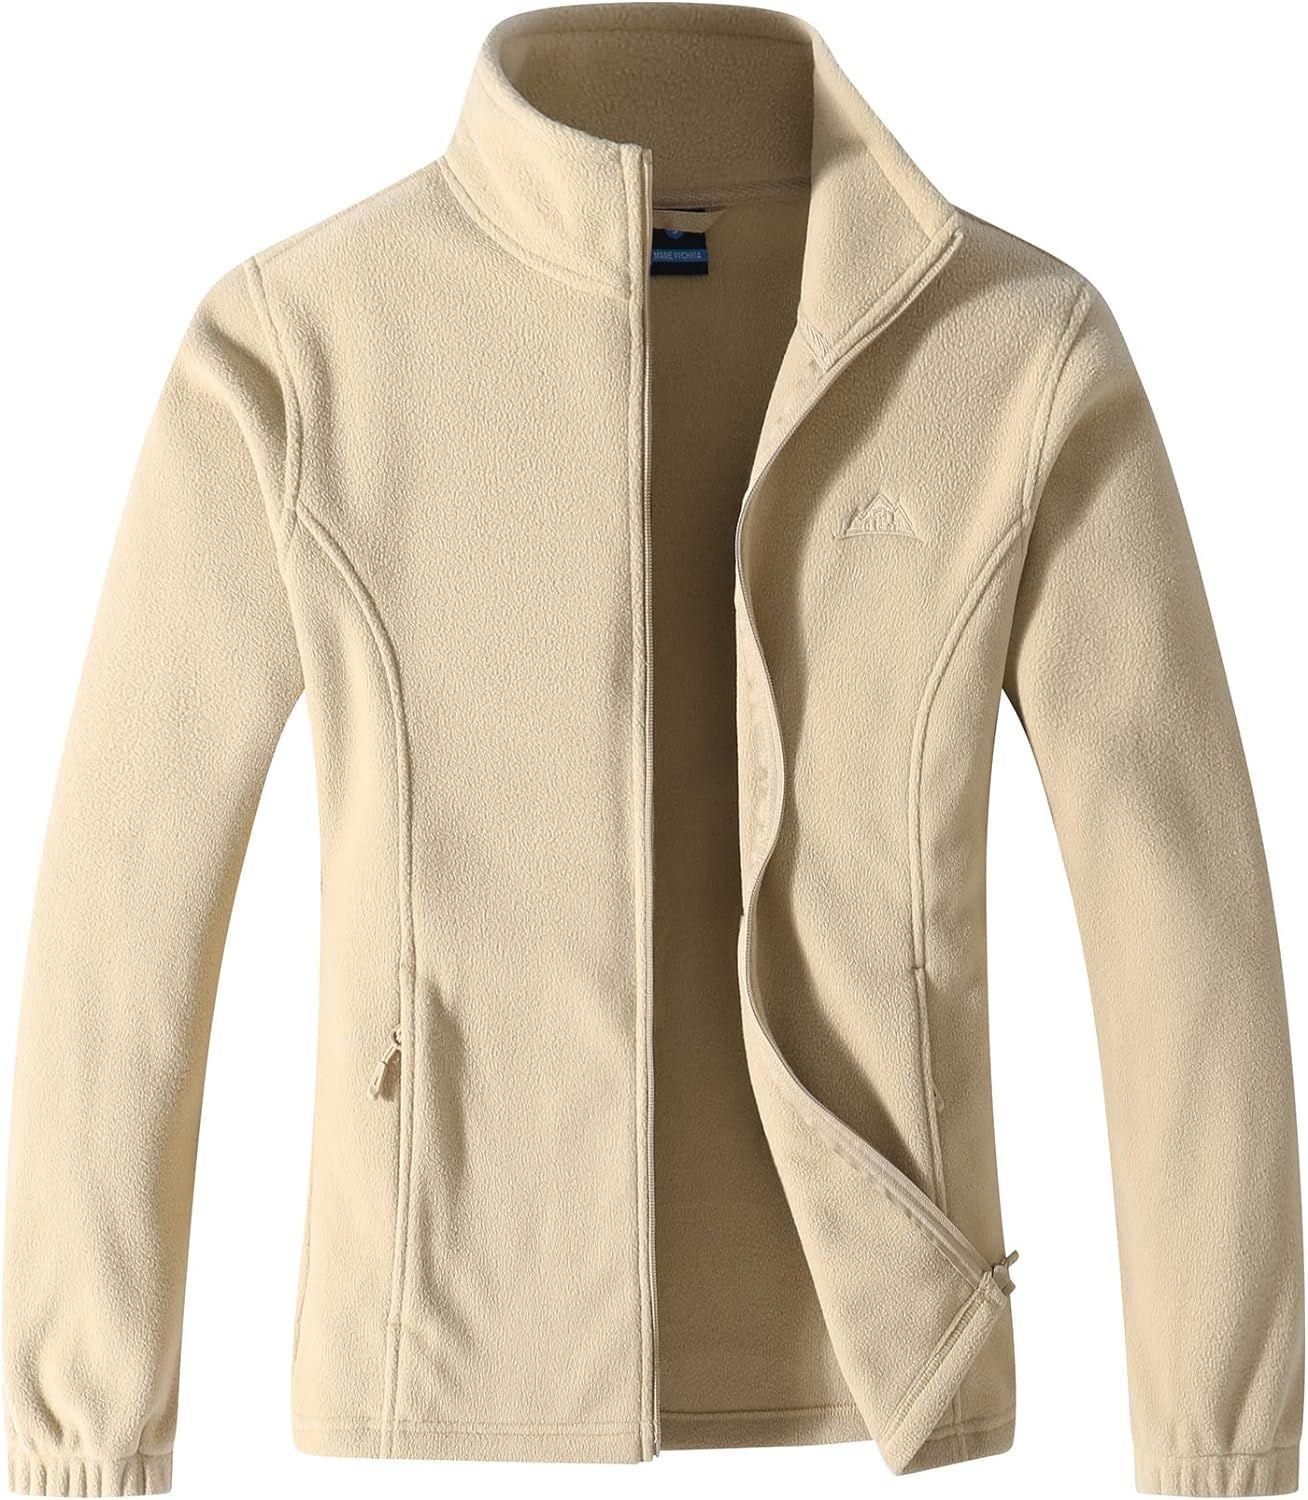 GIMECEN Women's Lightweight Full Zip Soft Polar Fleece Jacket Outdoor Recreation Coat With Zipper... | Amazon (US)